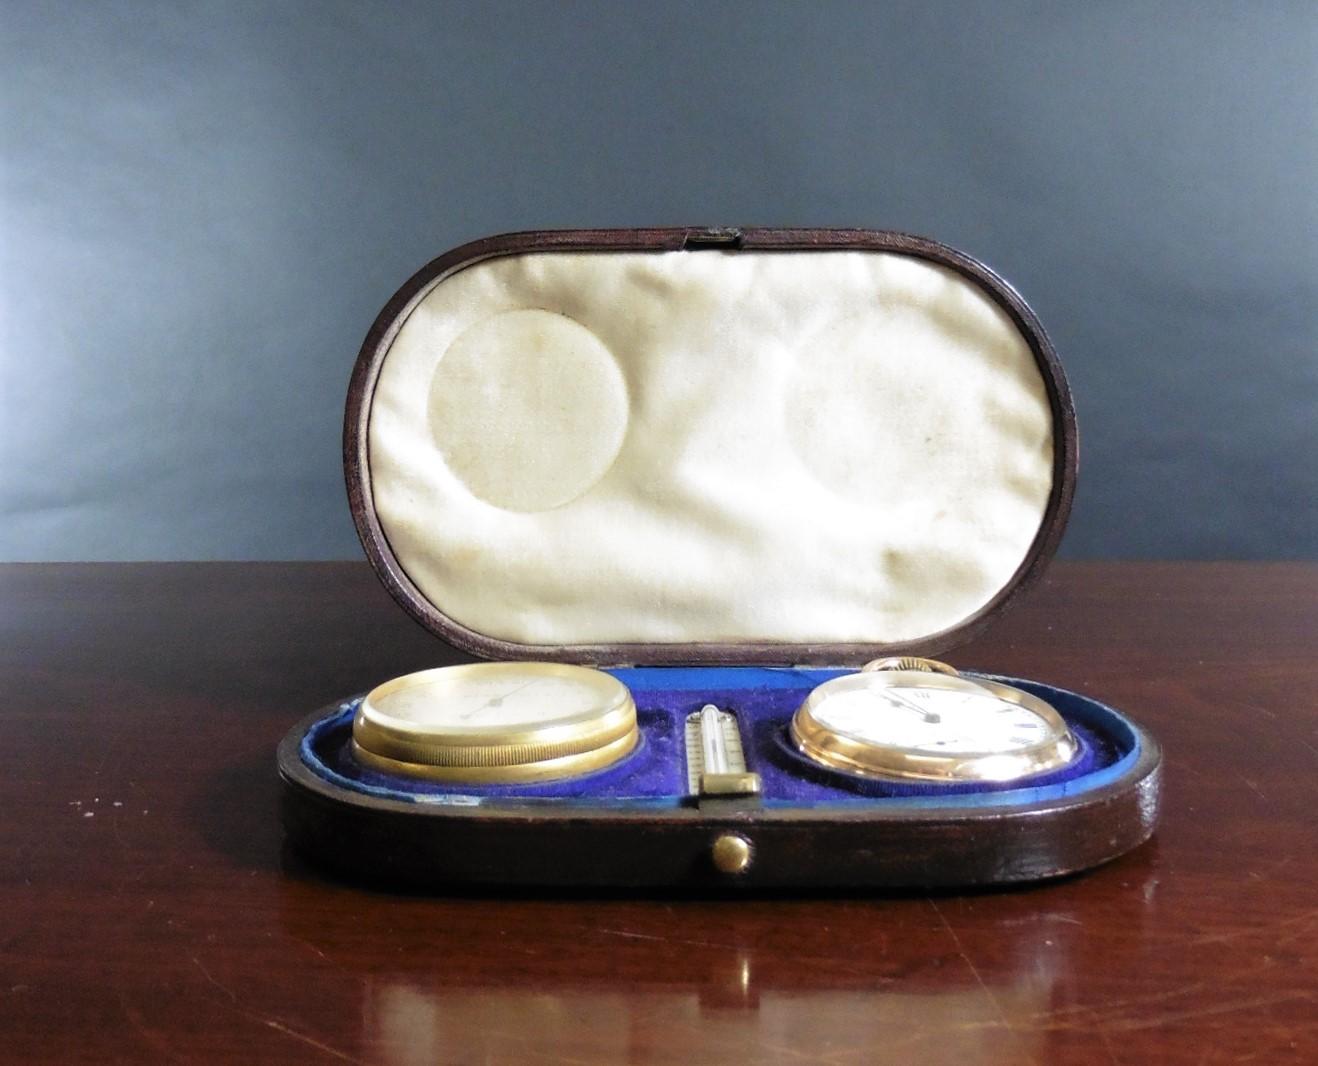 Viktorianische Taschenuhr, Barometer und Thermometer Kompendium Set.

In der originalen braunen Lederschatulle mit Scharnierdeckel und blauer Samtausstattung.

Im Inneren des Gehäuses befindet sich eine Taschenuhr mit Messinggehäuse und